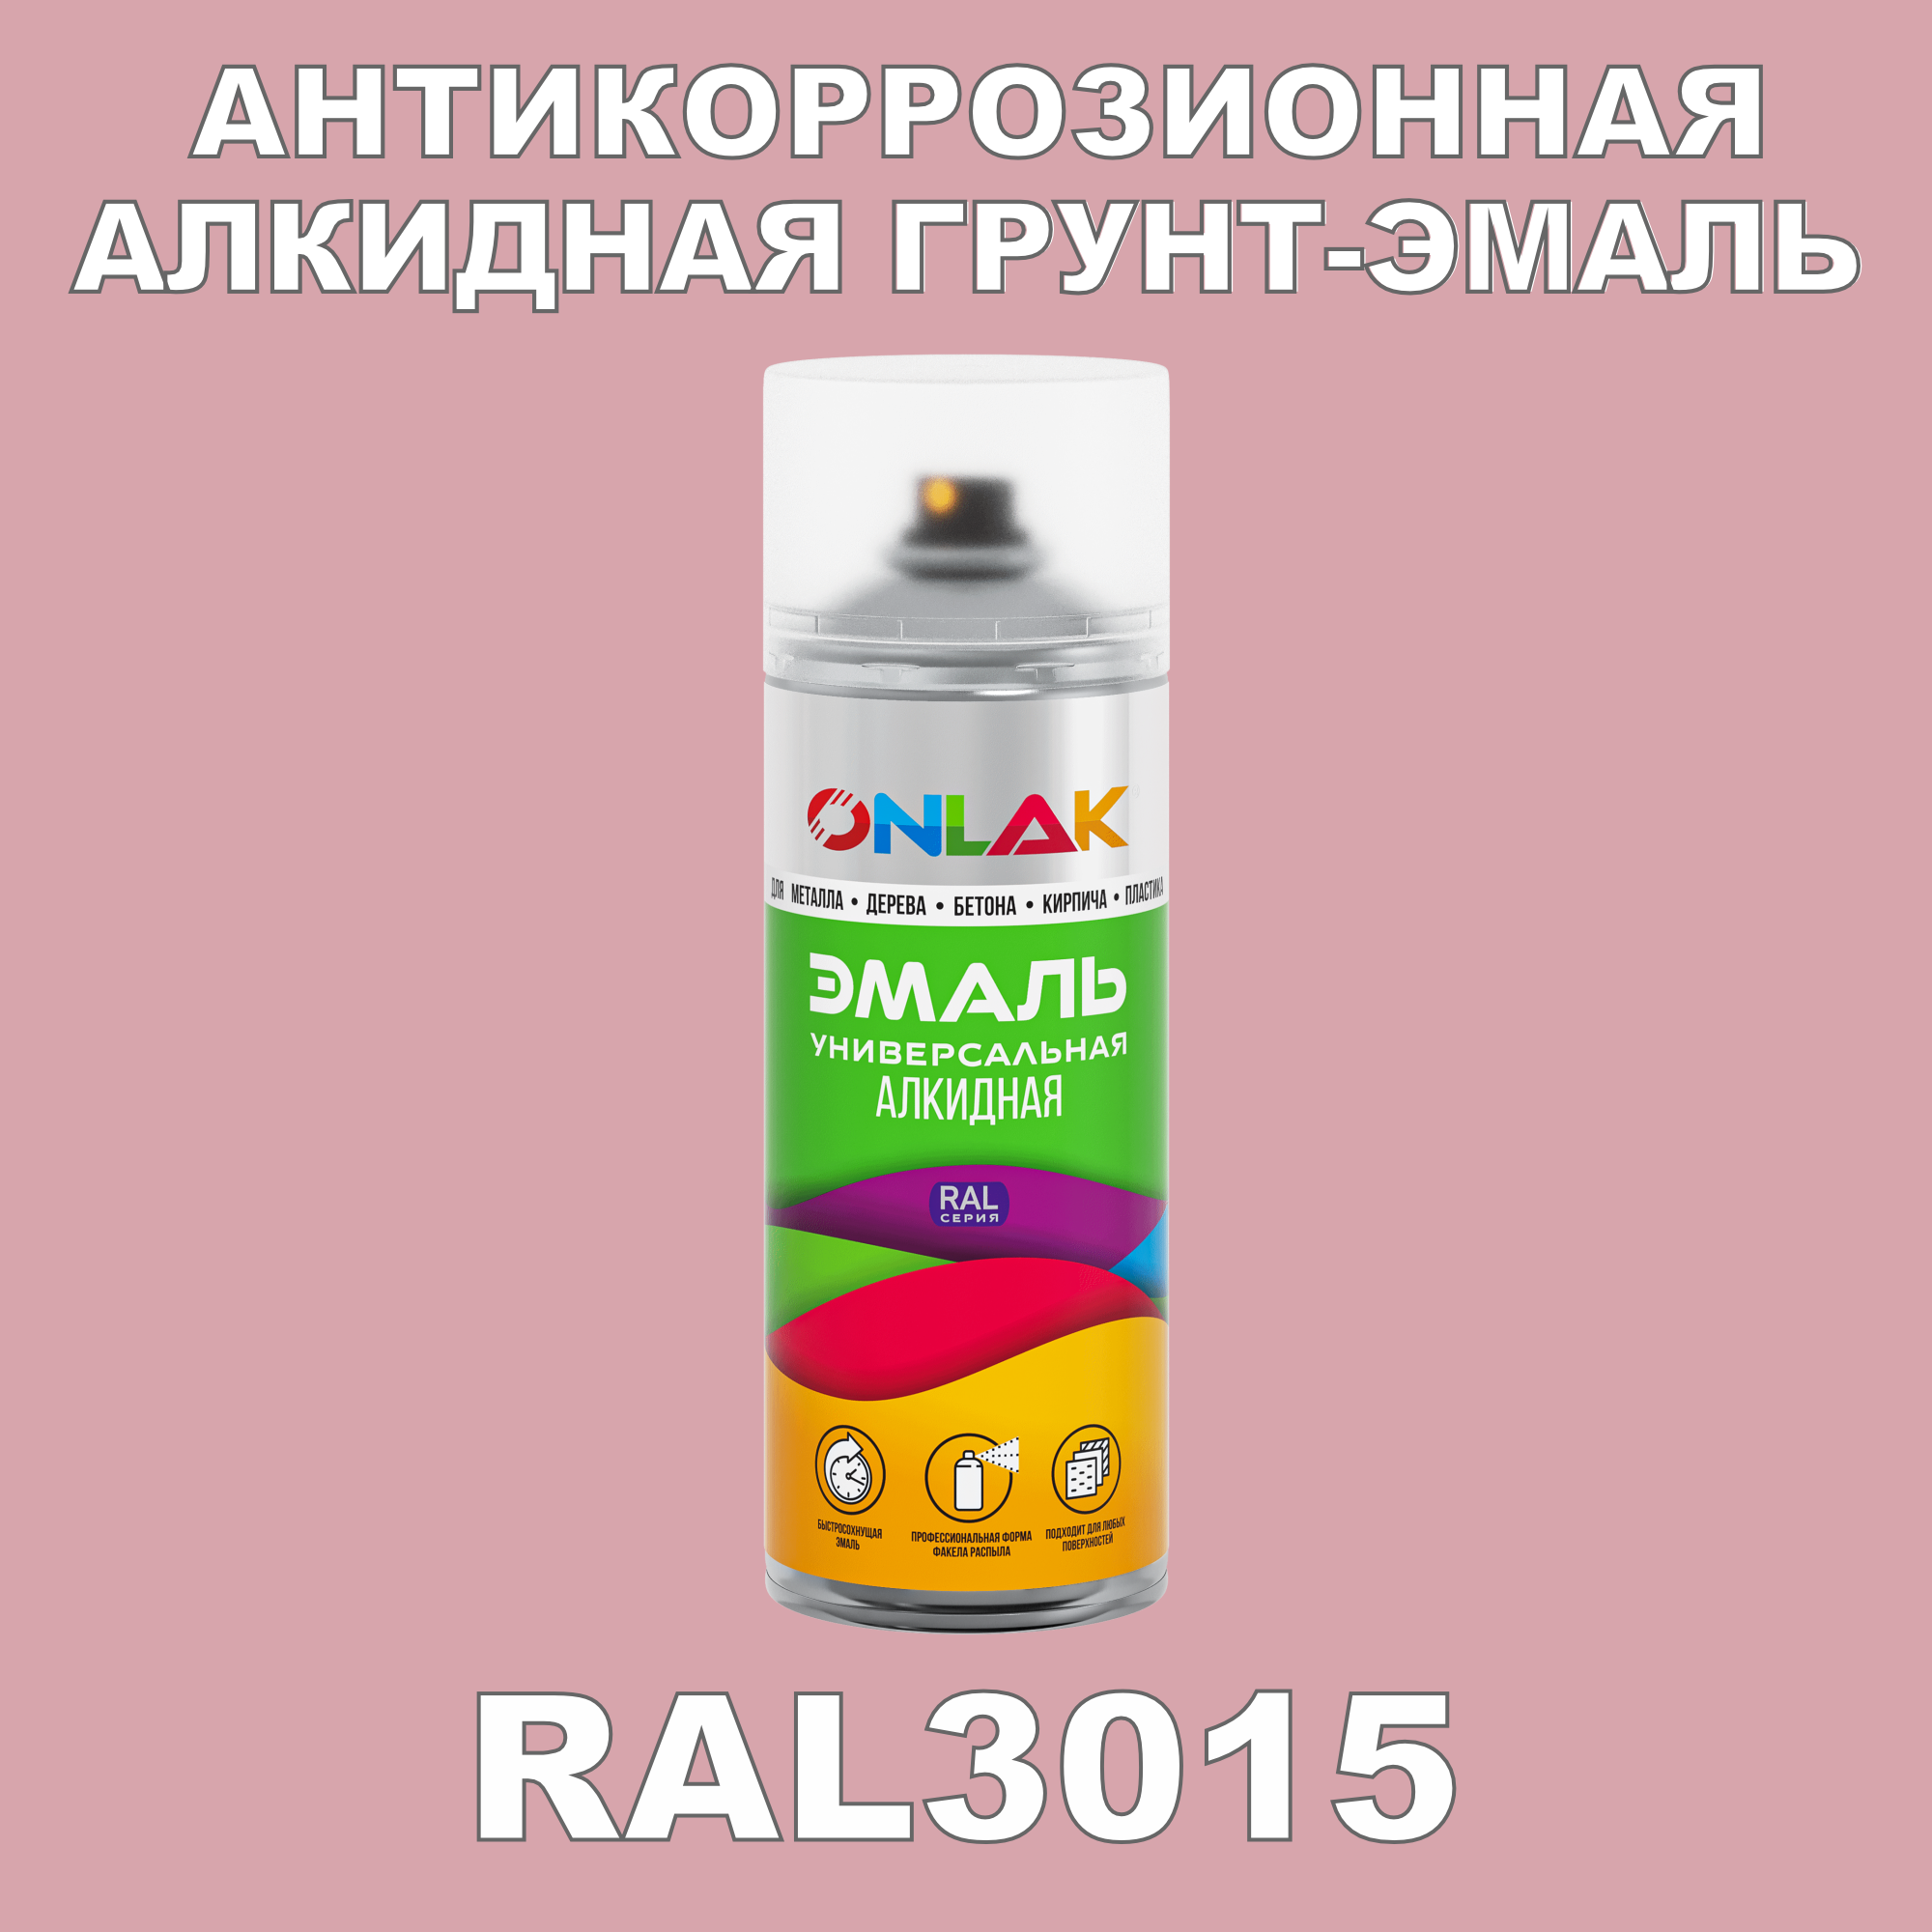 Антикоррозионная грунт-эмаль ONLAK RAL3015 полуматовая для металла и защиты от ржавчины